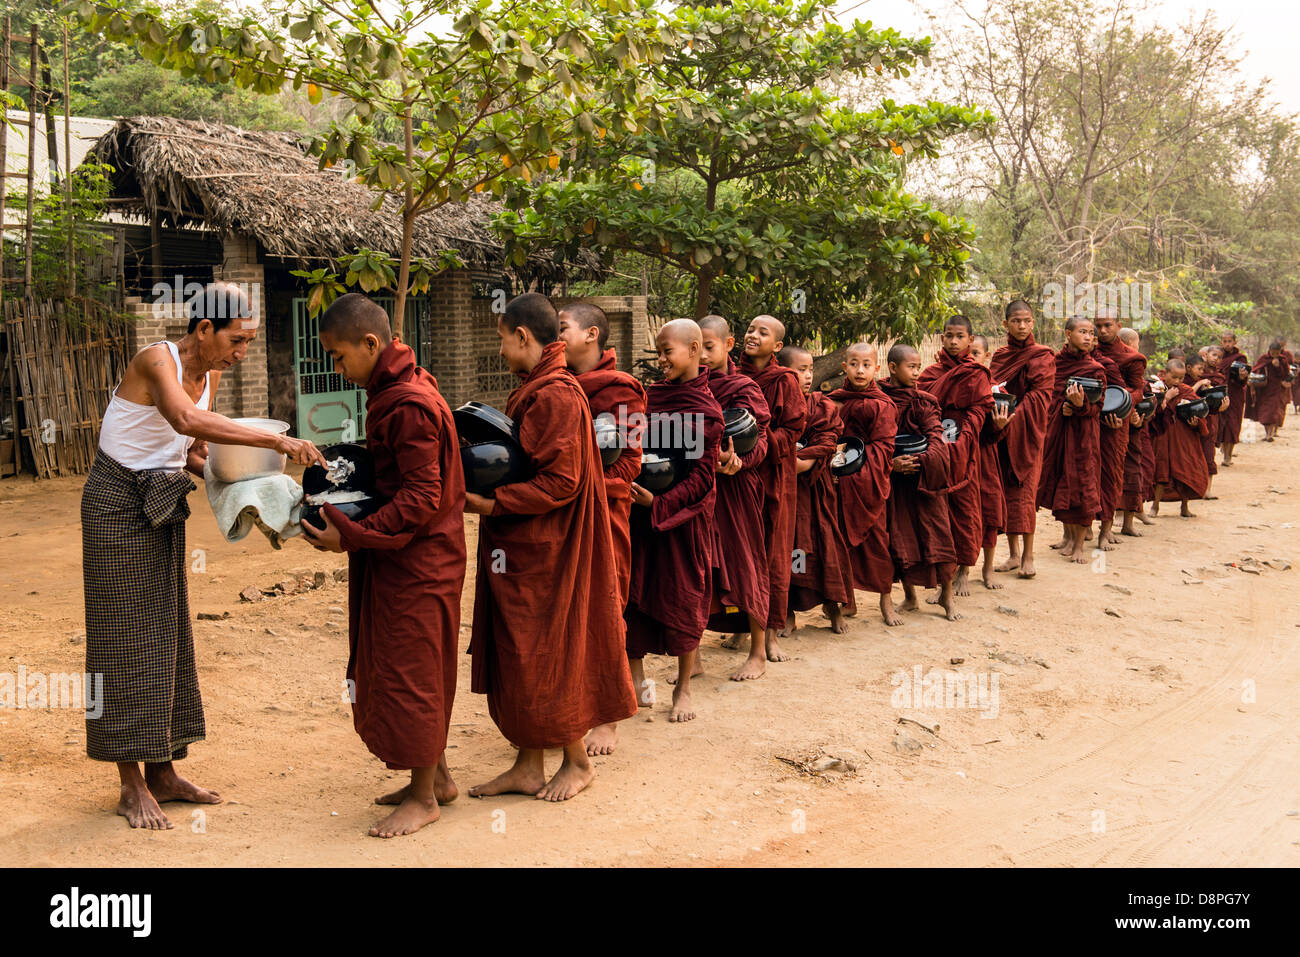 Les moines bouddhistes, la collecte de l'Aumône (ou boules) de nourriture dans la matinée des villageois près de Bagan Birmanie Myanmar Banque D'Images